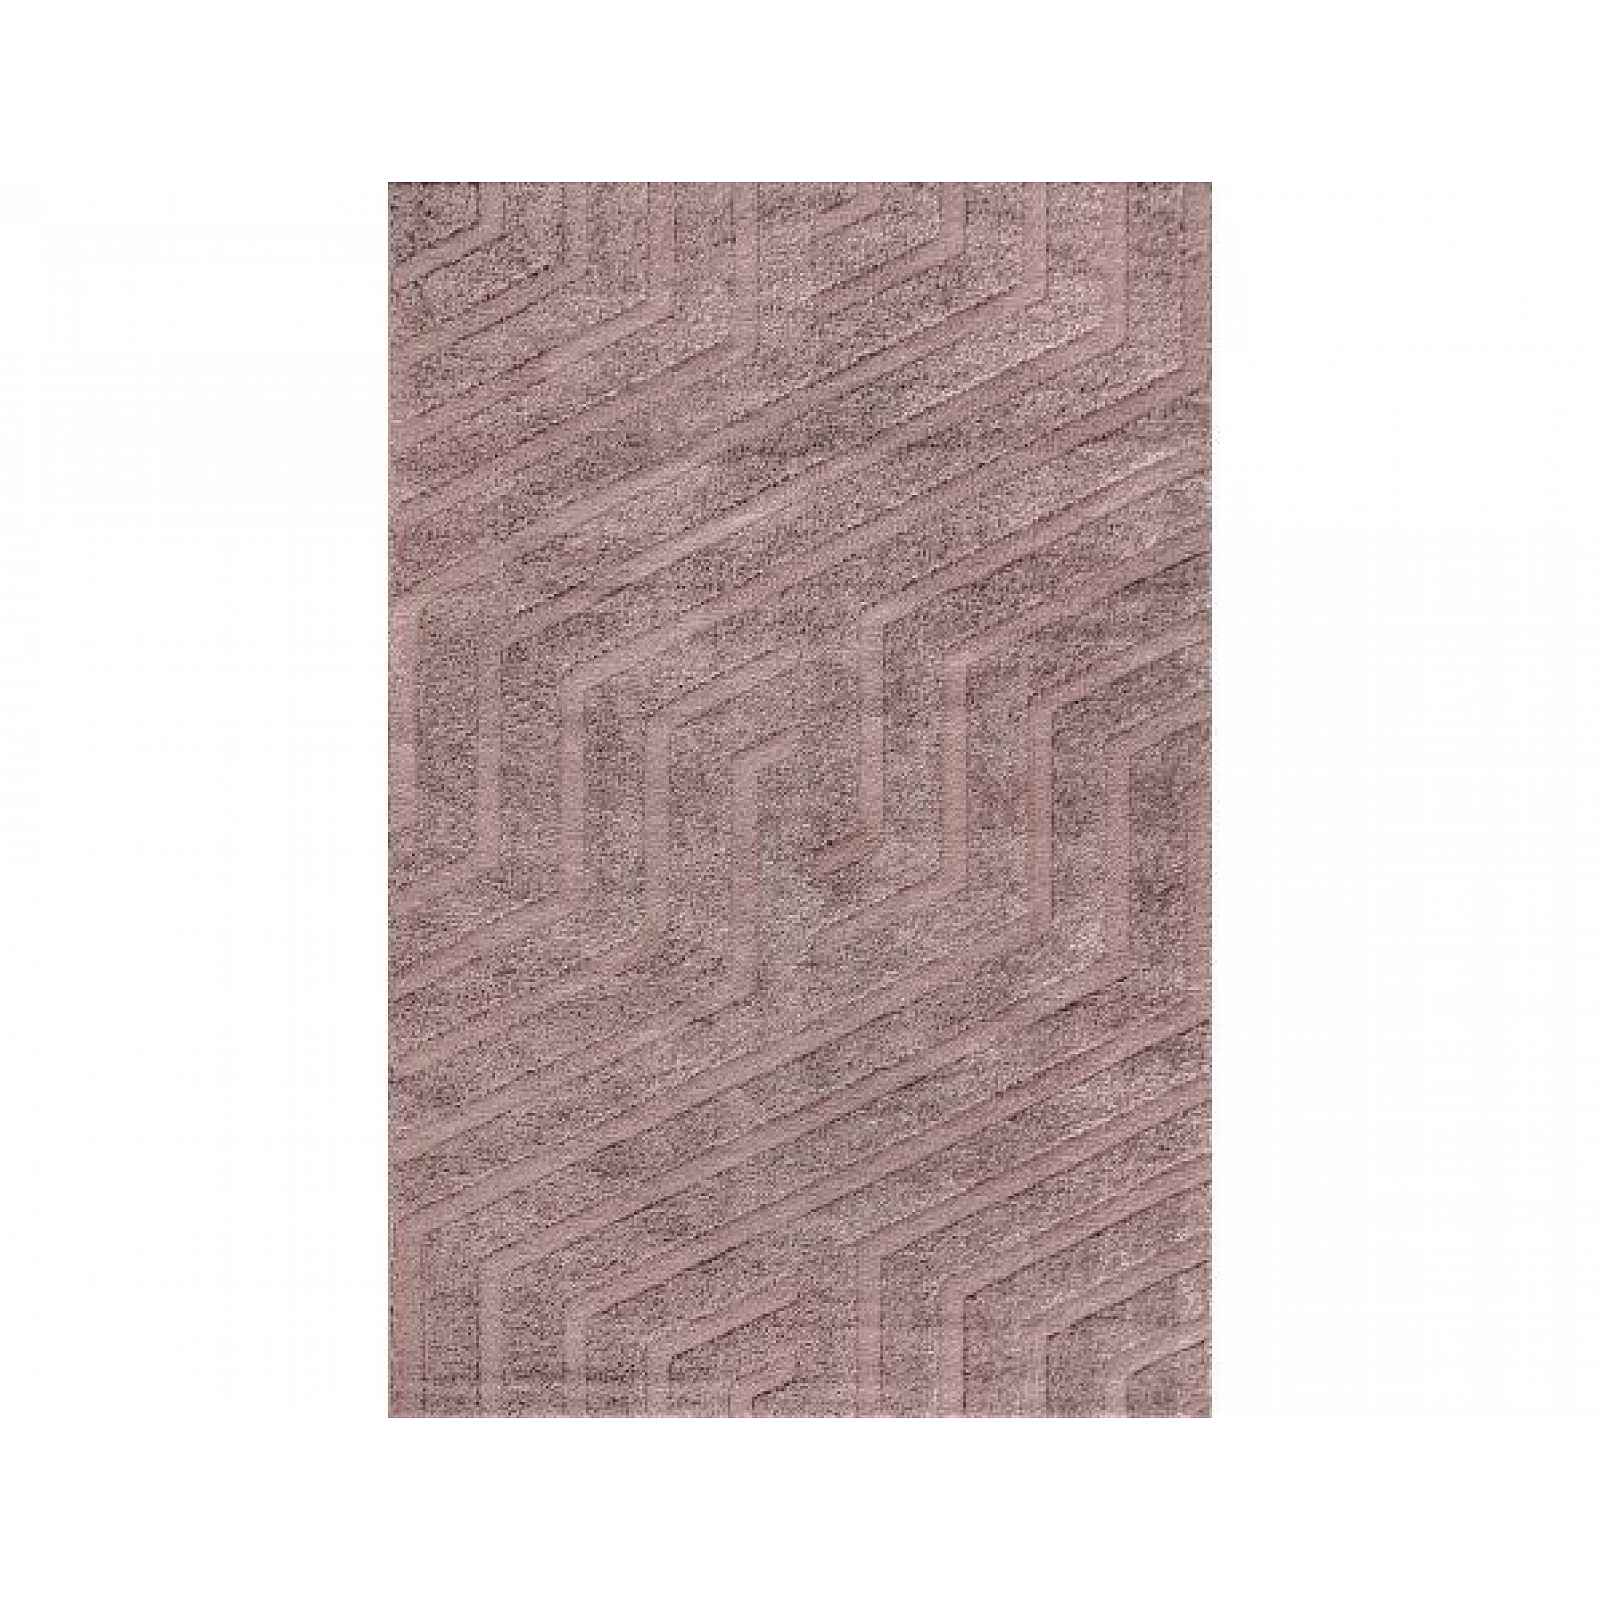 Kusový koberec Mega 6003-70, 200x300 cm